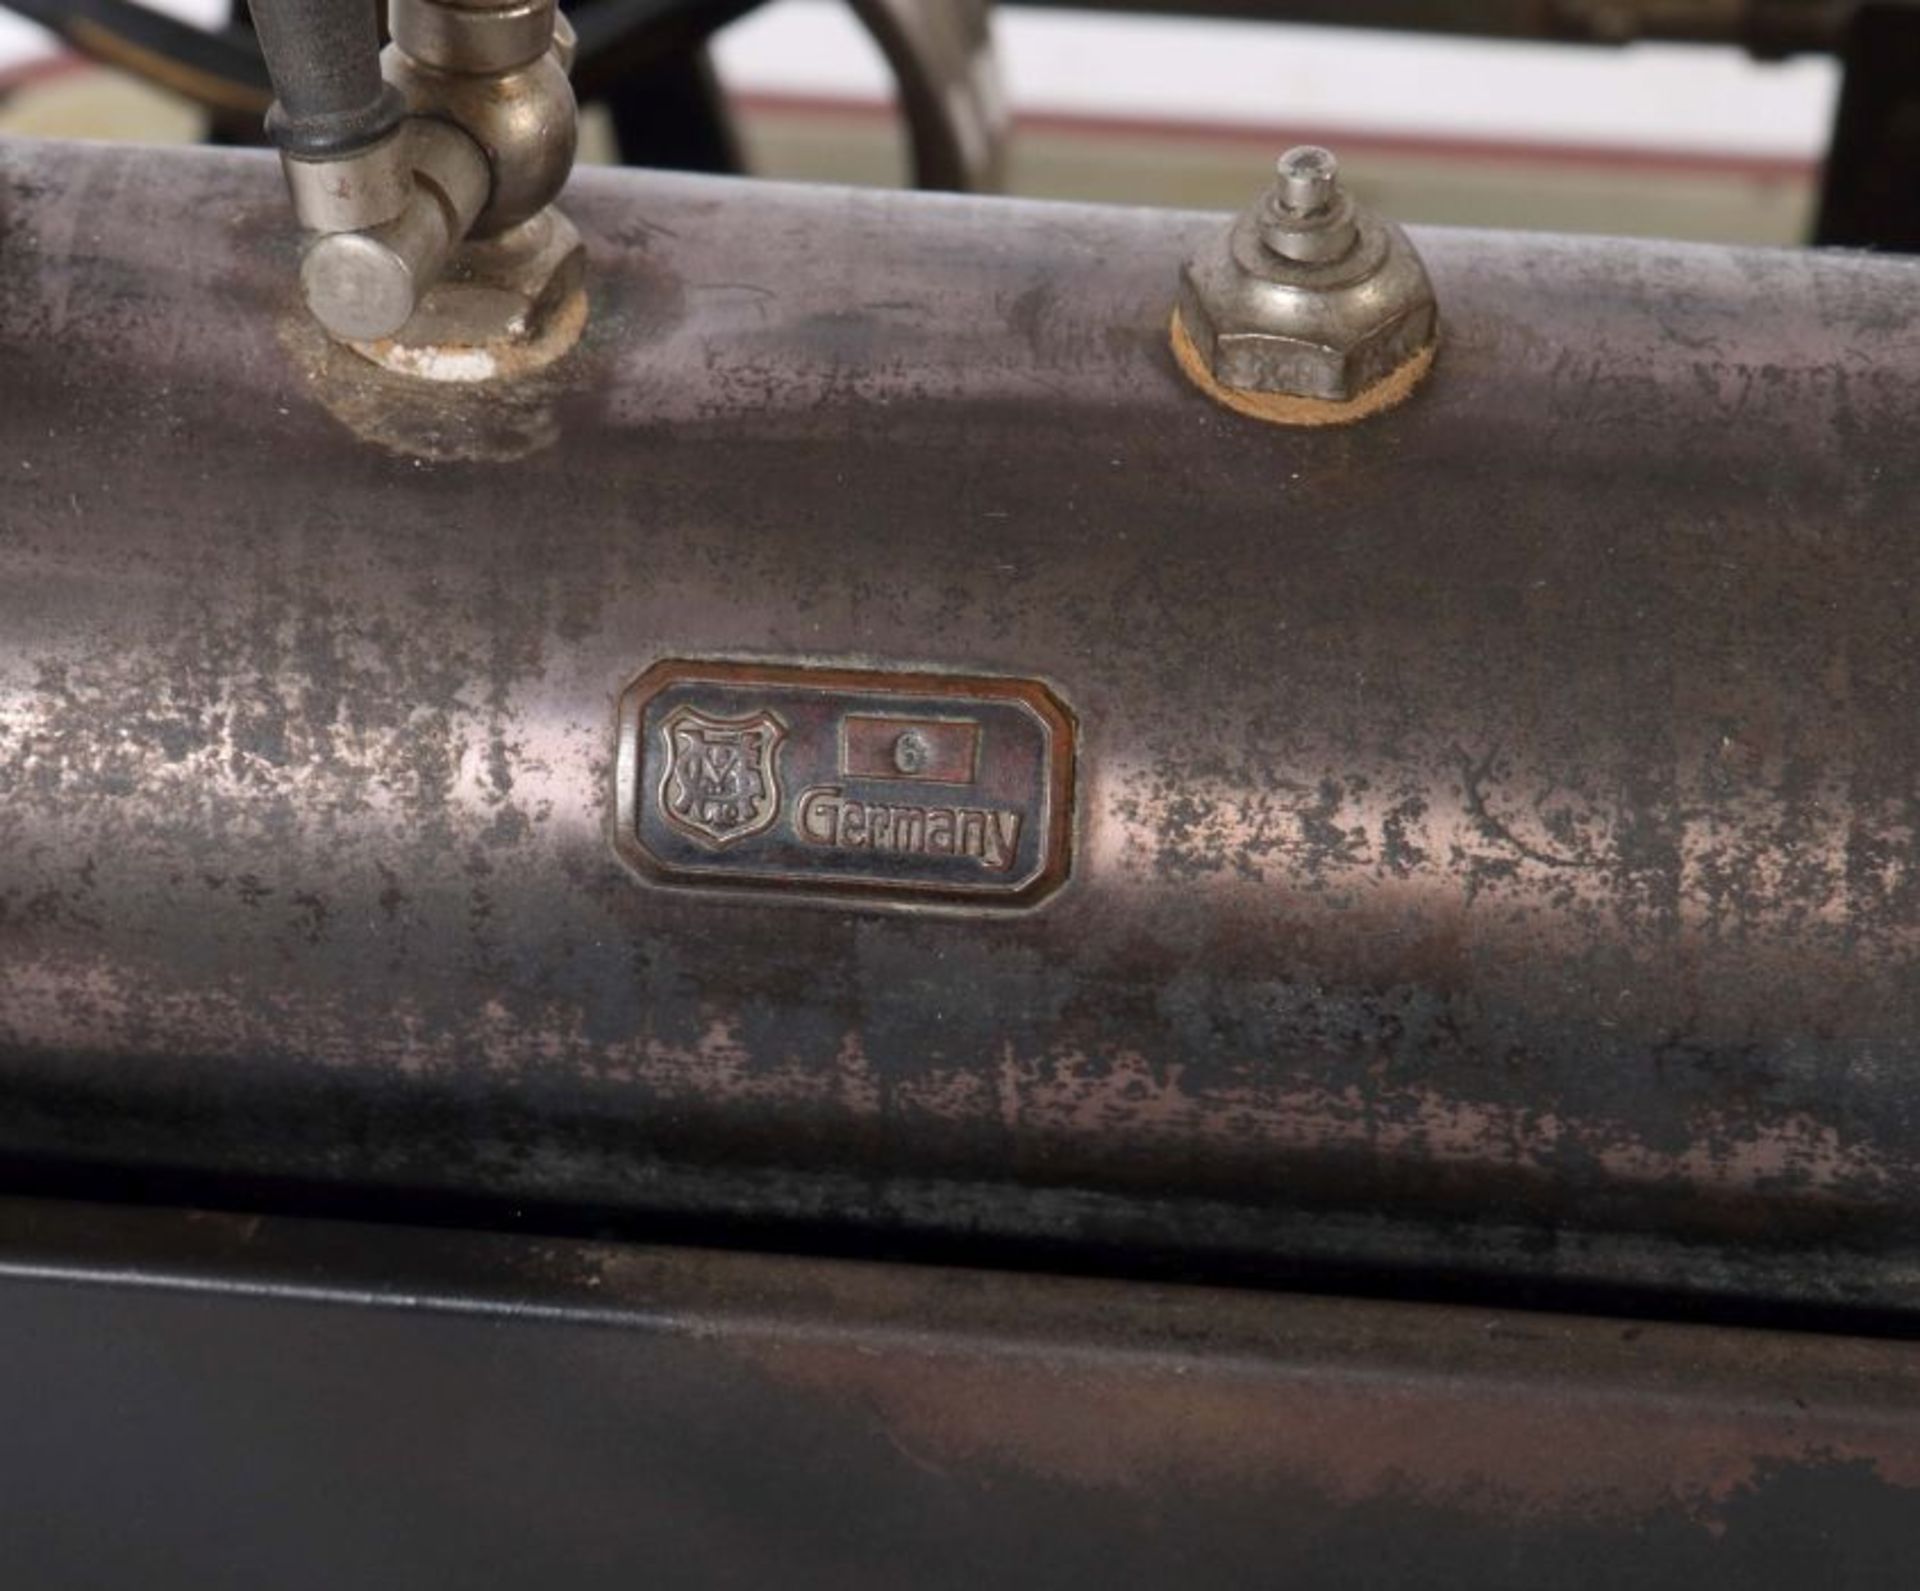 Dampfmaschine Märklin, wohl 4132/5 N, 1928, liegender, stahlblau patinieter Kessel, Pfeife, - Bild 4 aus 5